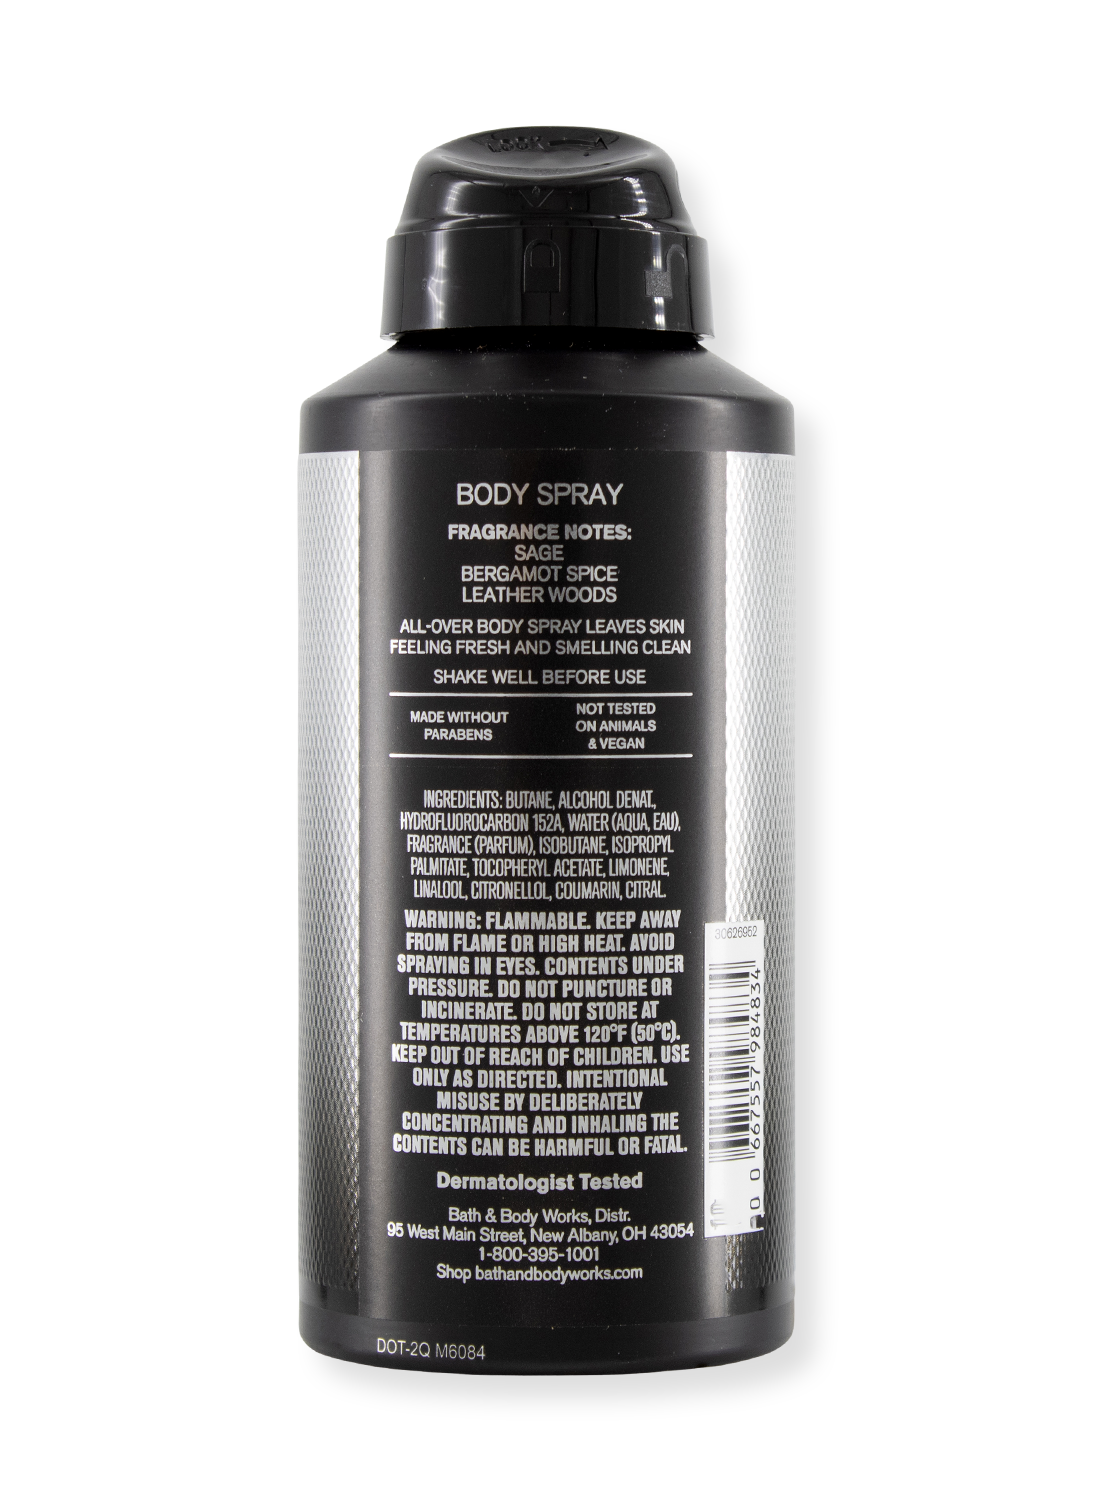 Body Spray - Graphite - For Men - 104g